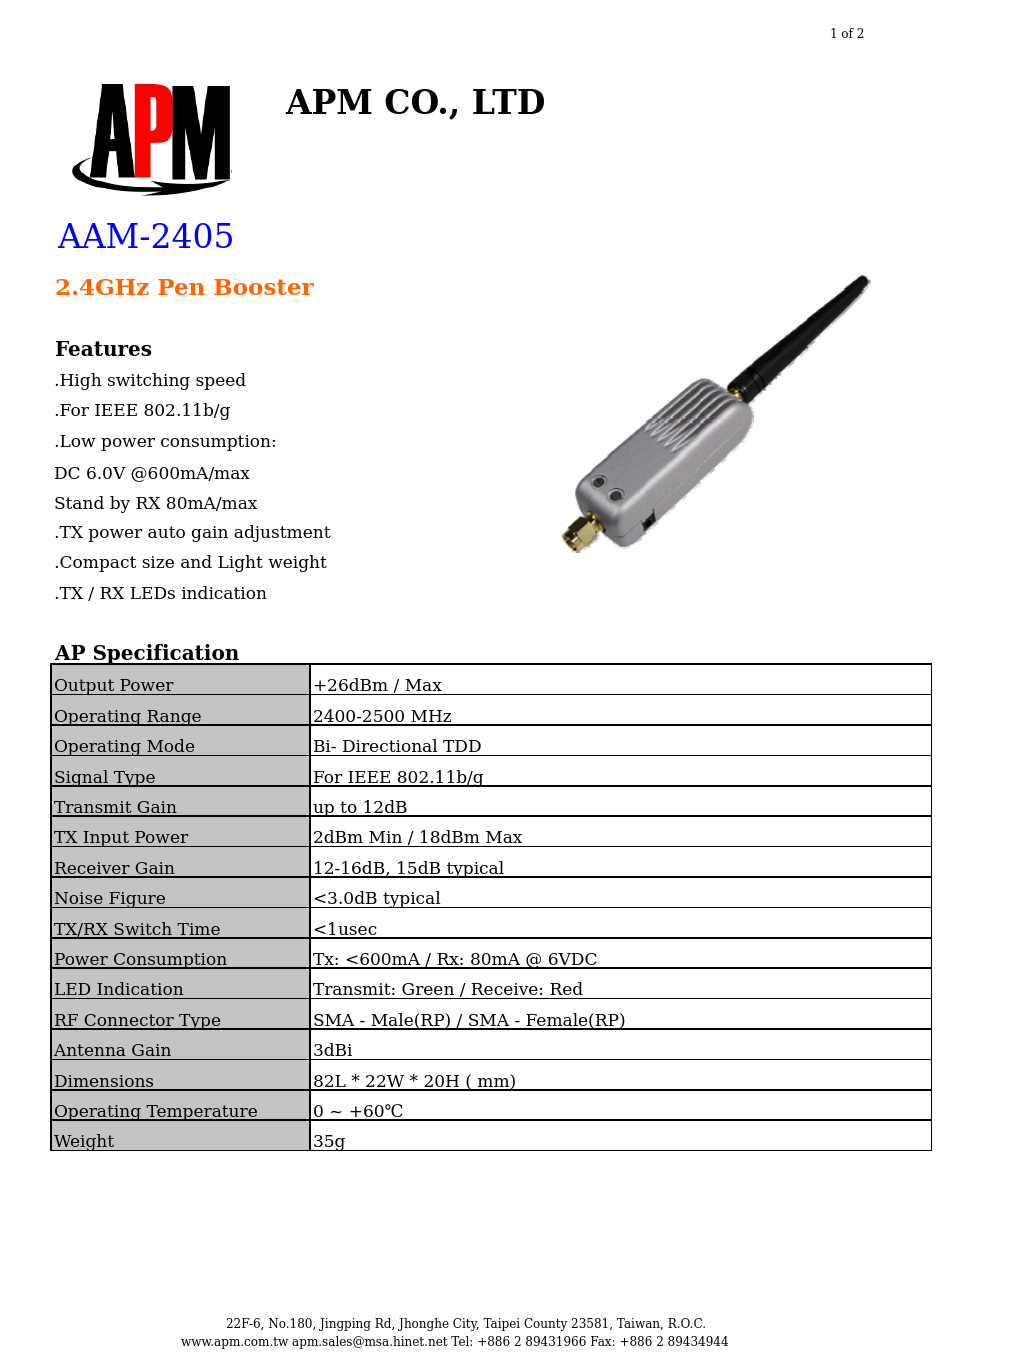 Pen Booster AAM-2405